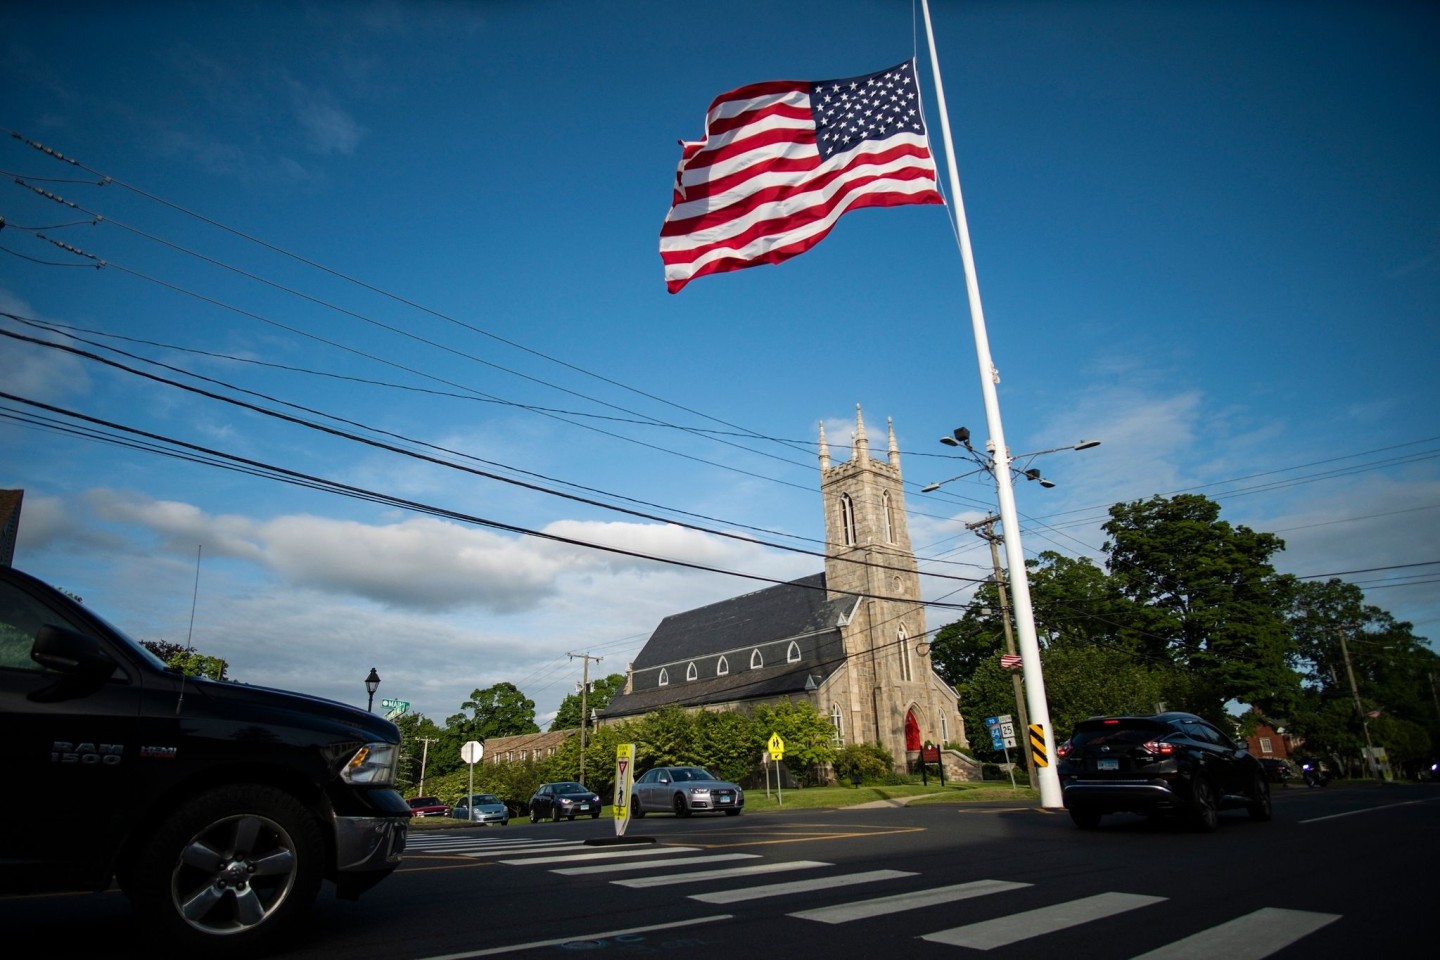 US-Flagge auf halbmast vor einer Kirche, in der eine Mahnwache aus Solidarität mit den Familien von Uvalde stattfindet.